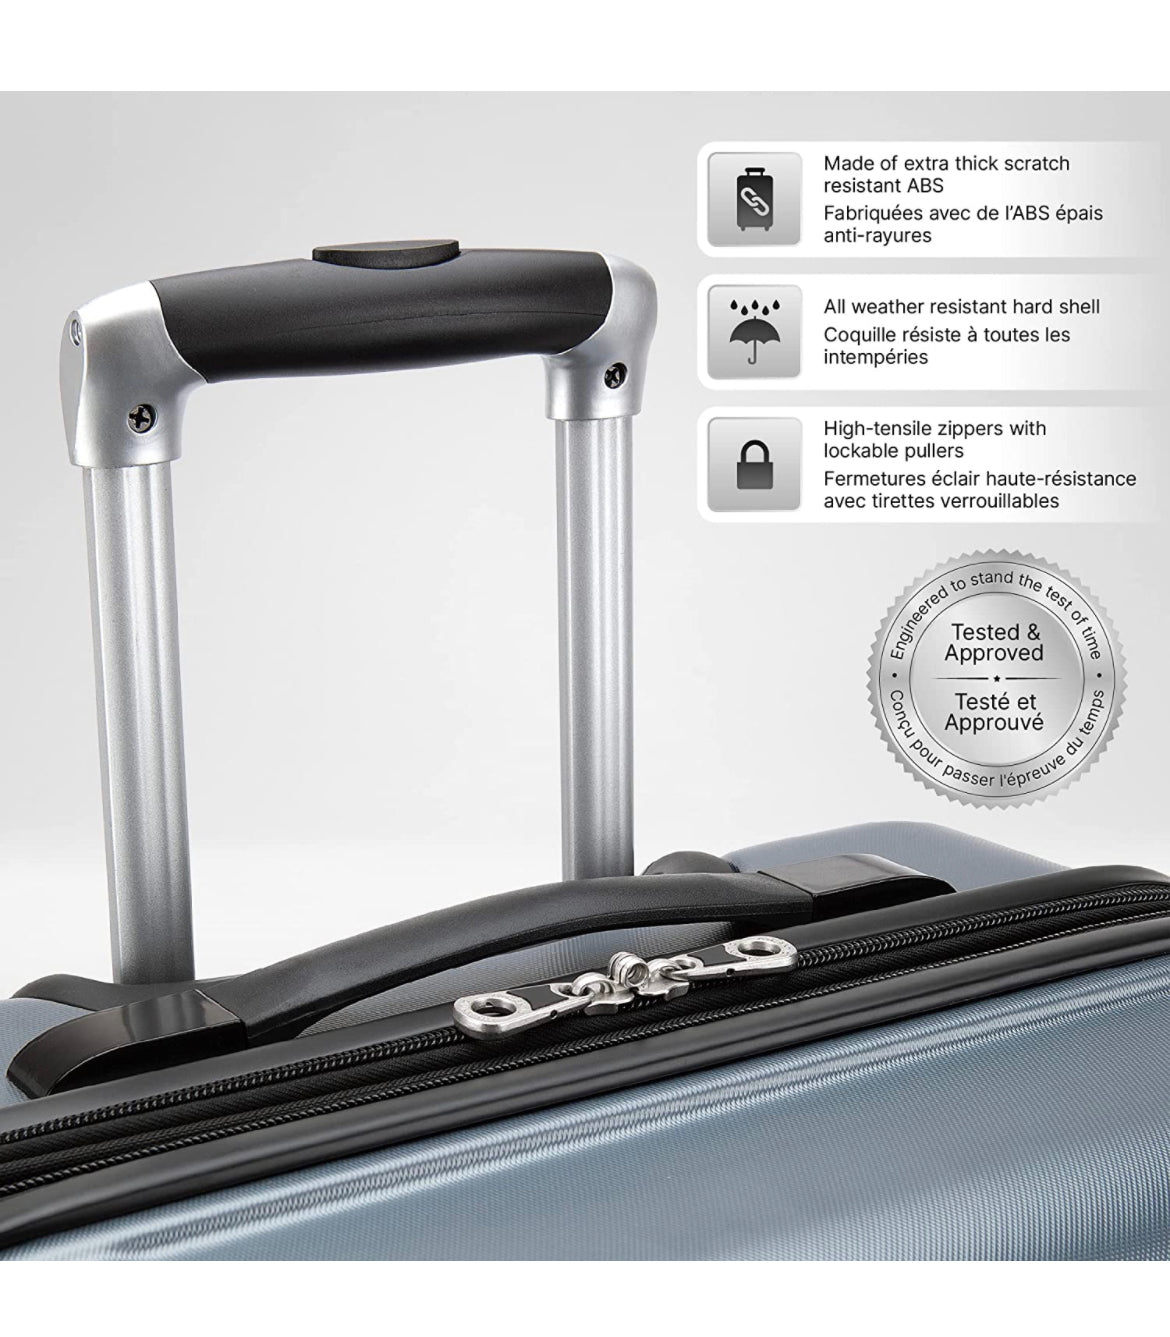 ATLANTIC Horizon Hardside Expandable Spinner Luggage 3-Piece Set